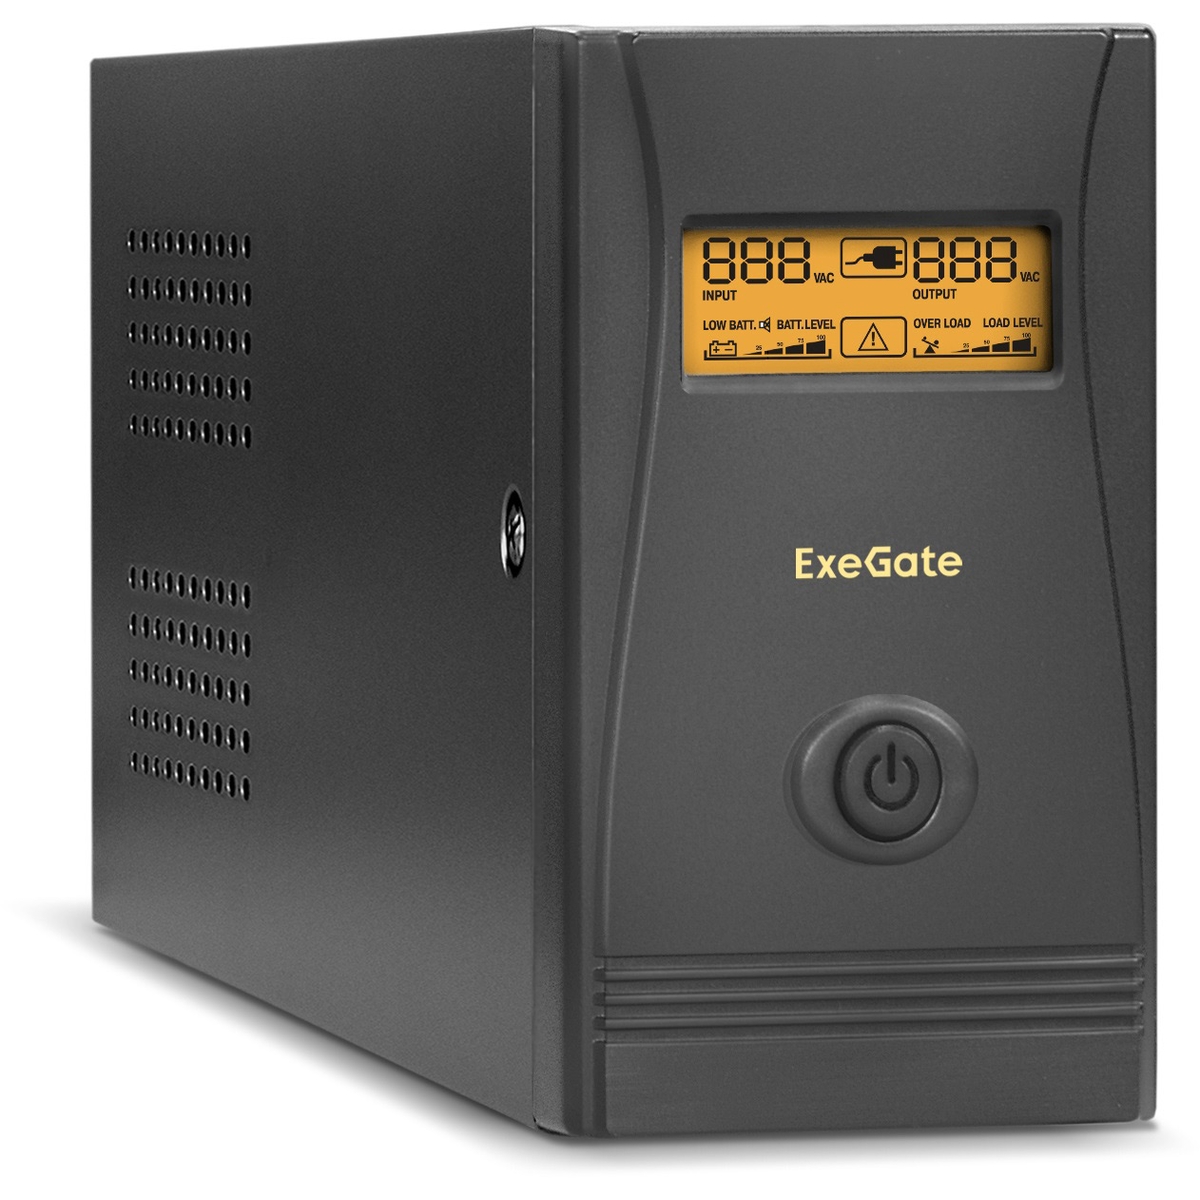  ExeGate Power Smart ULB-650.LCD.AVR.4C13.RJ.USB